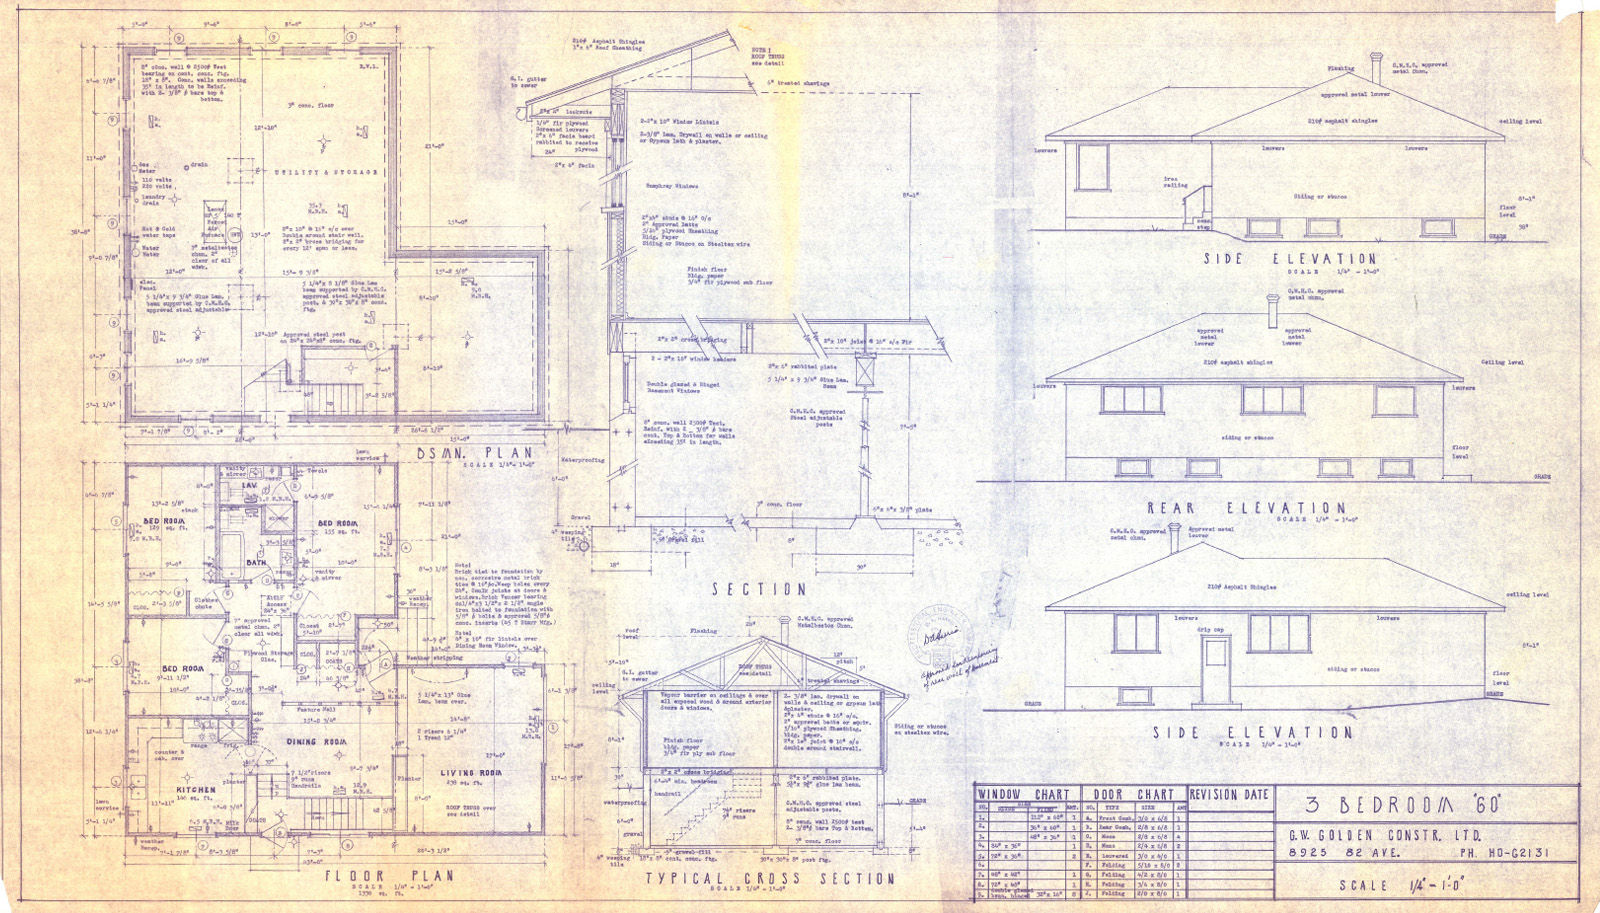 3 Bedroom '60' blueprints